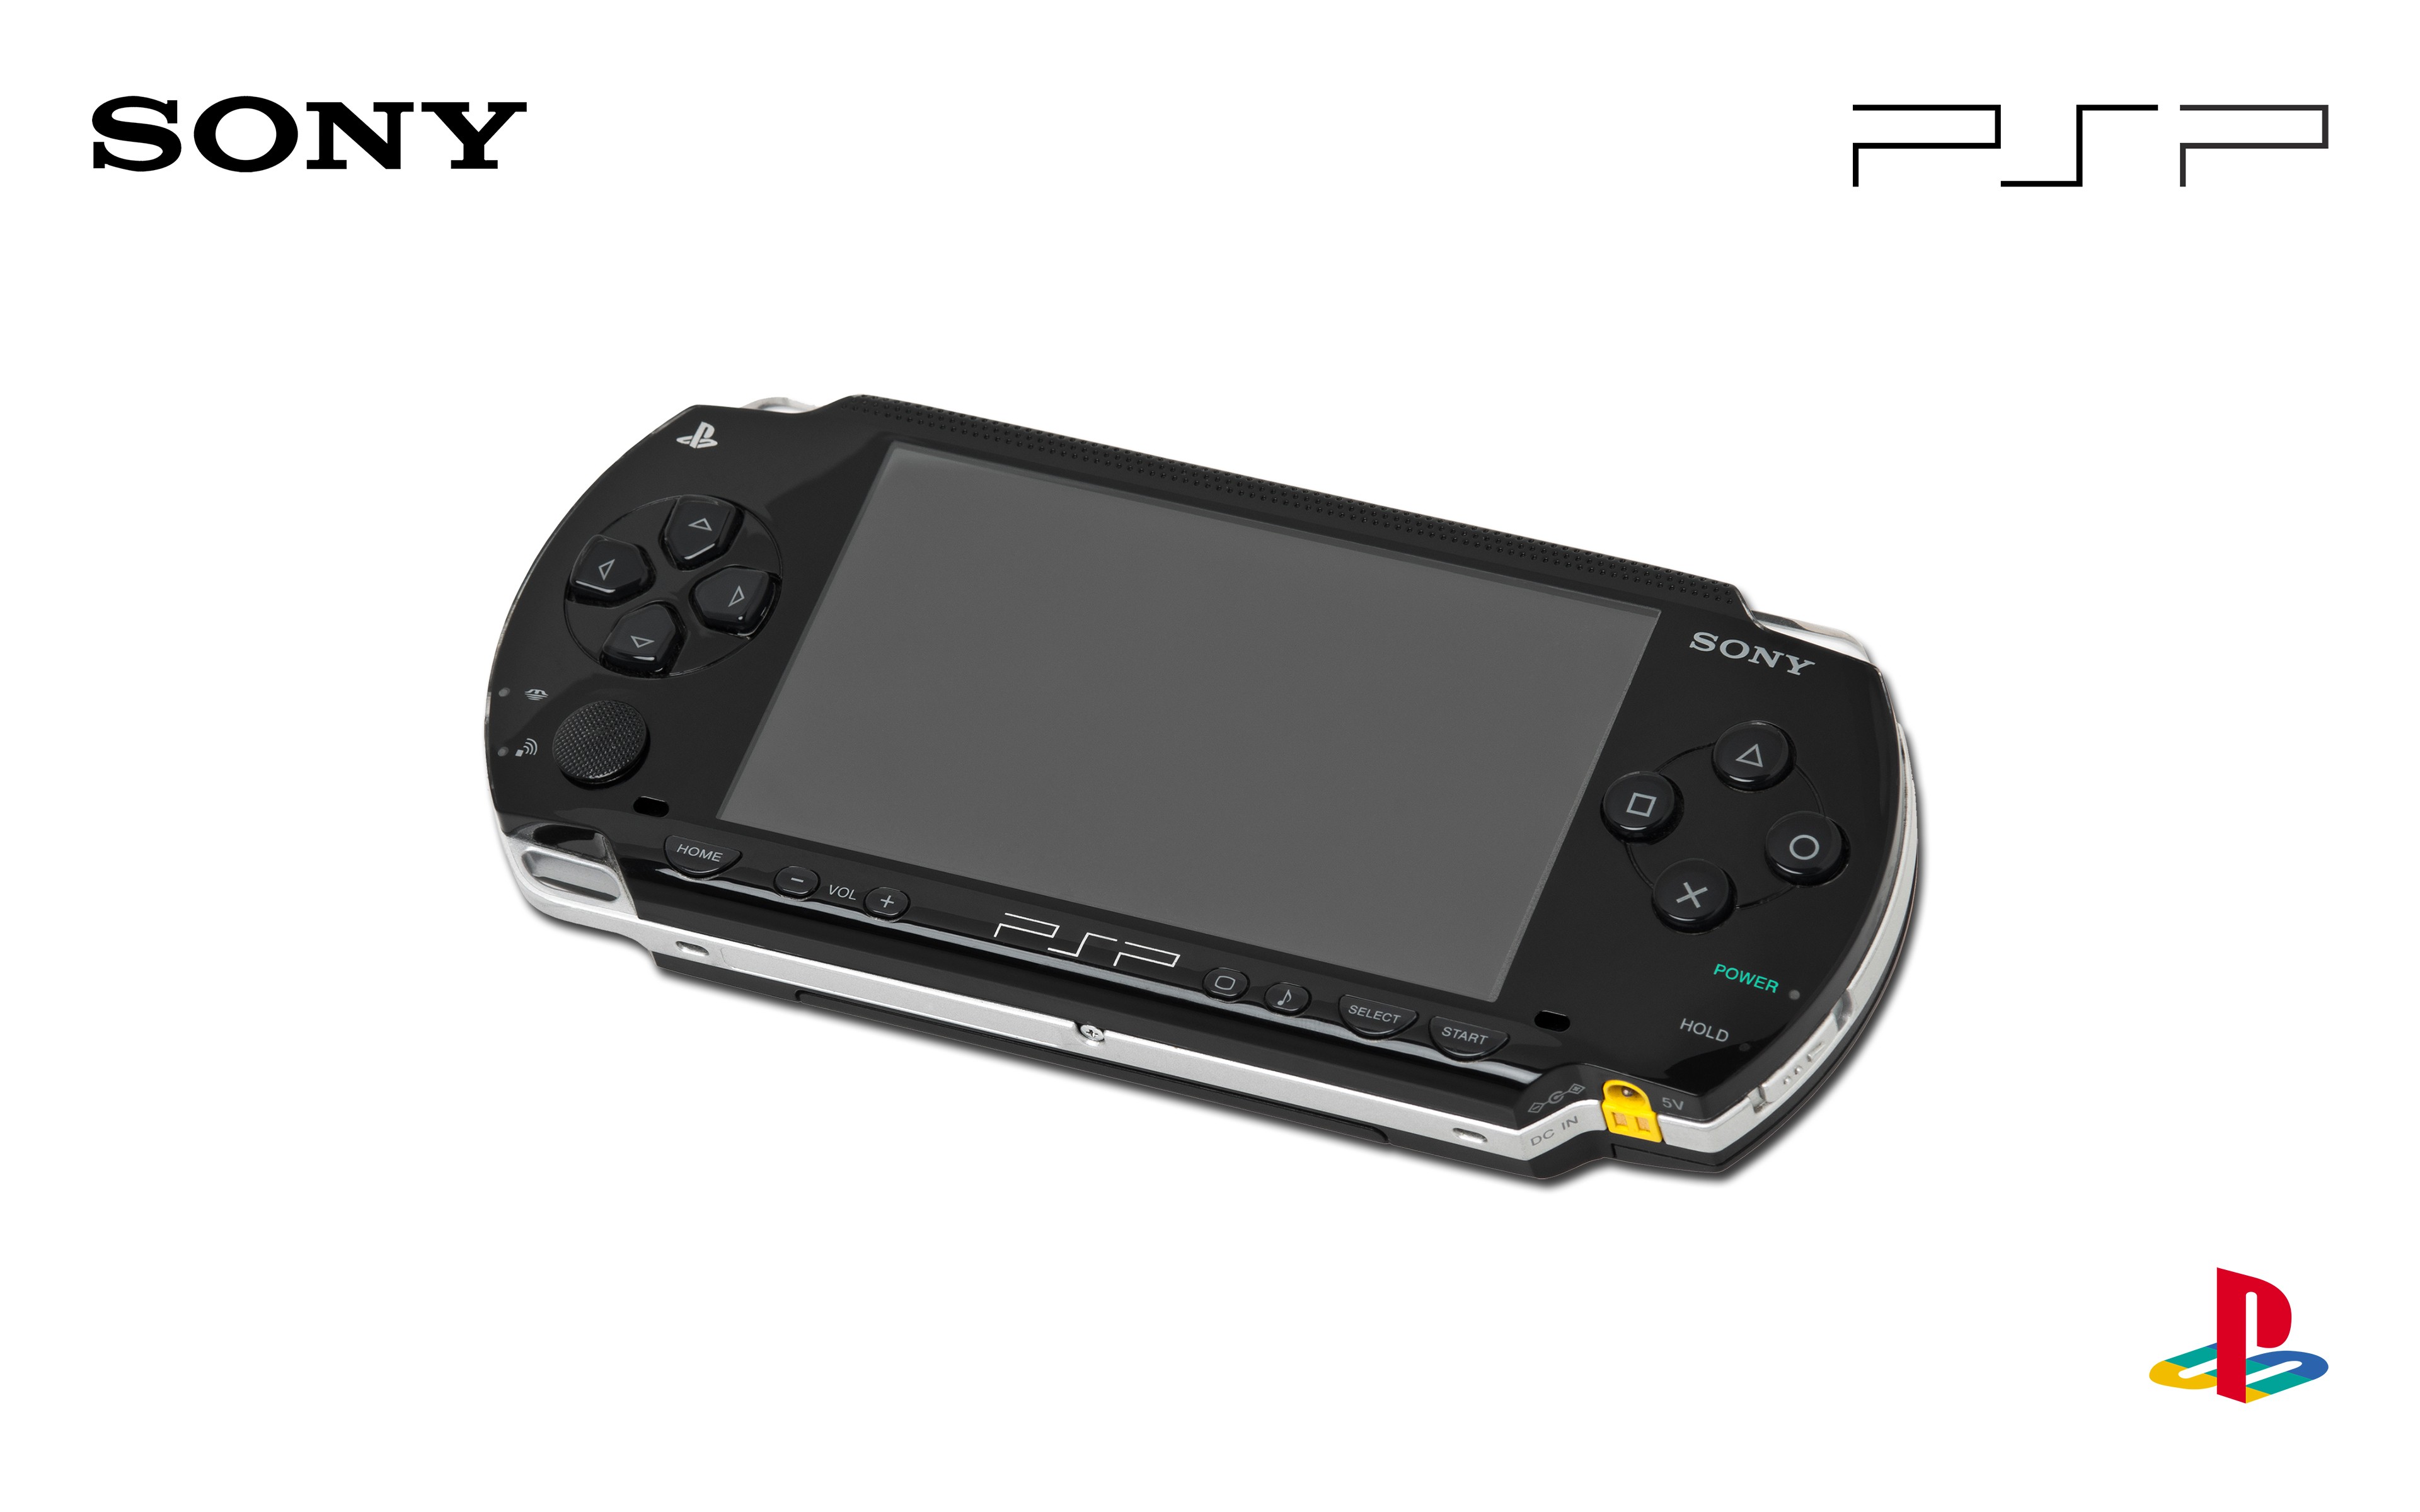 PSP 游戏机